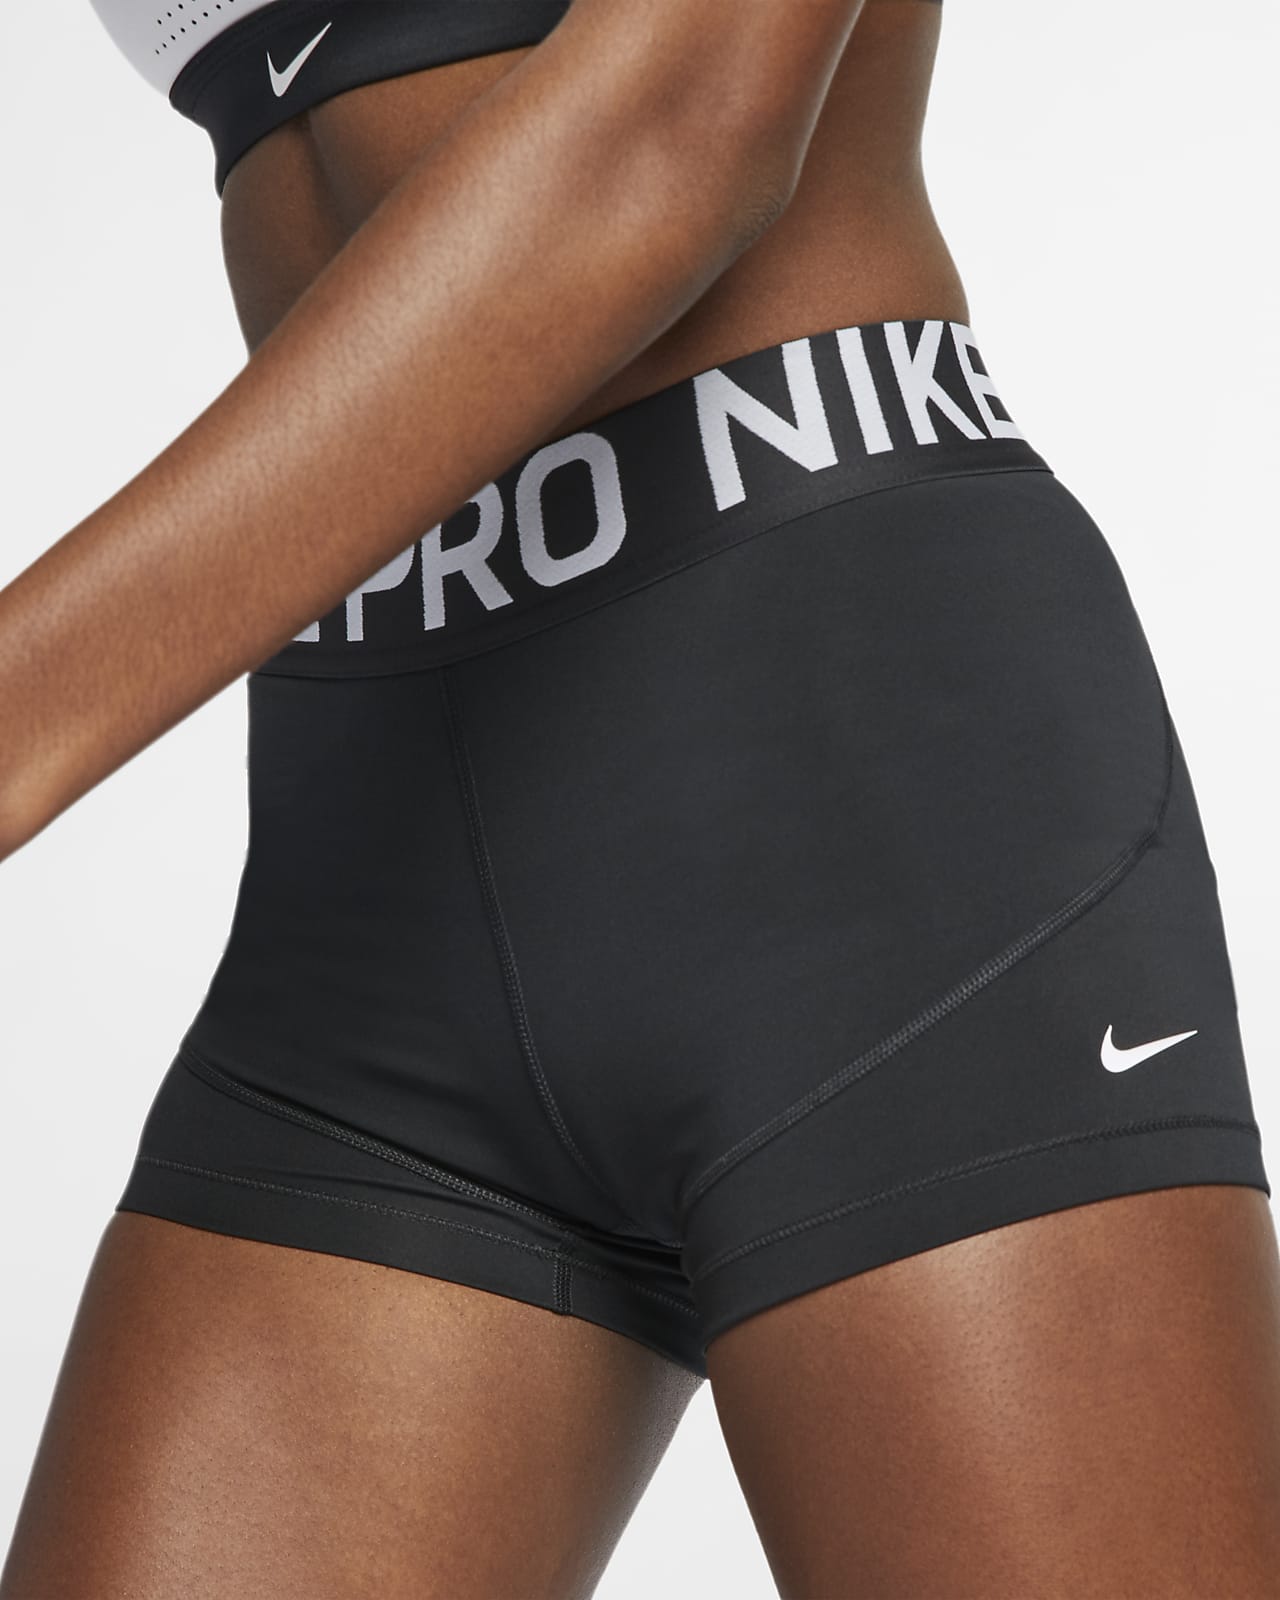 nike pro shorts women small